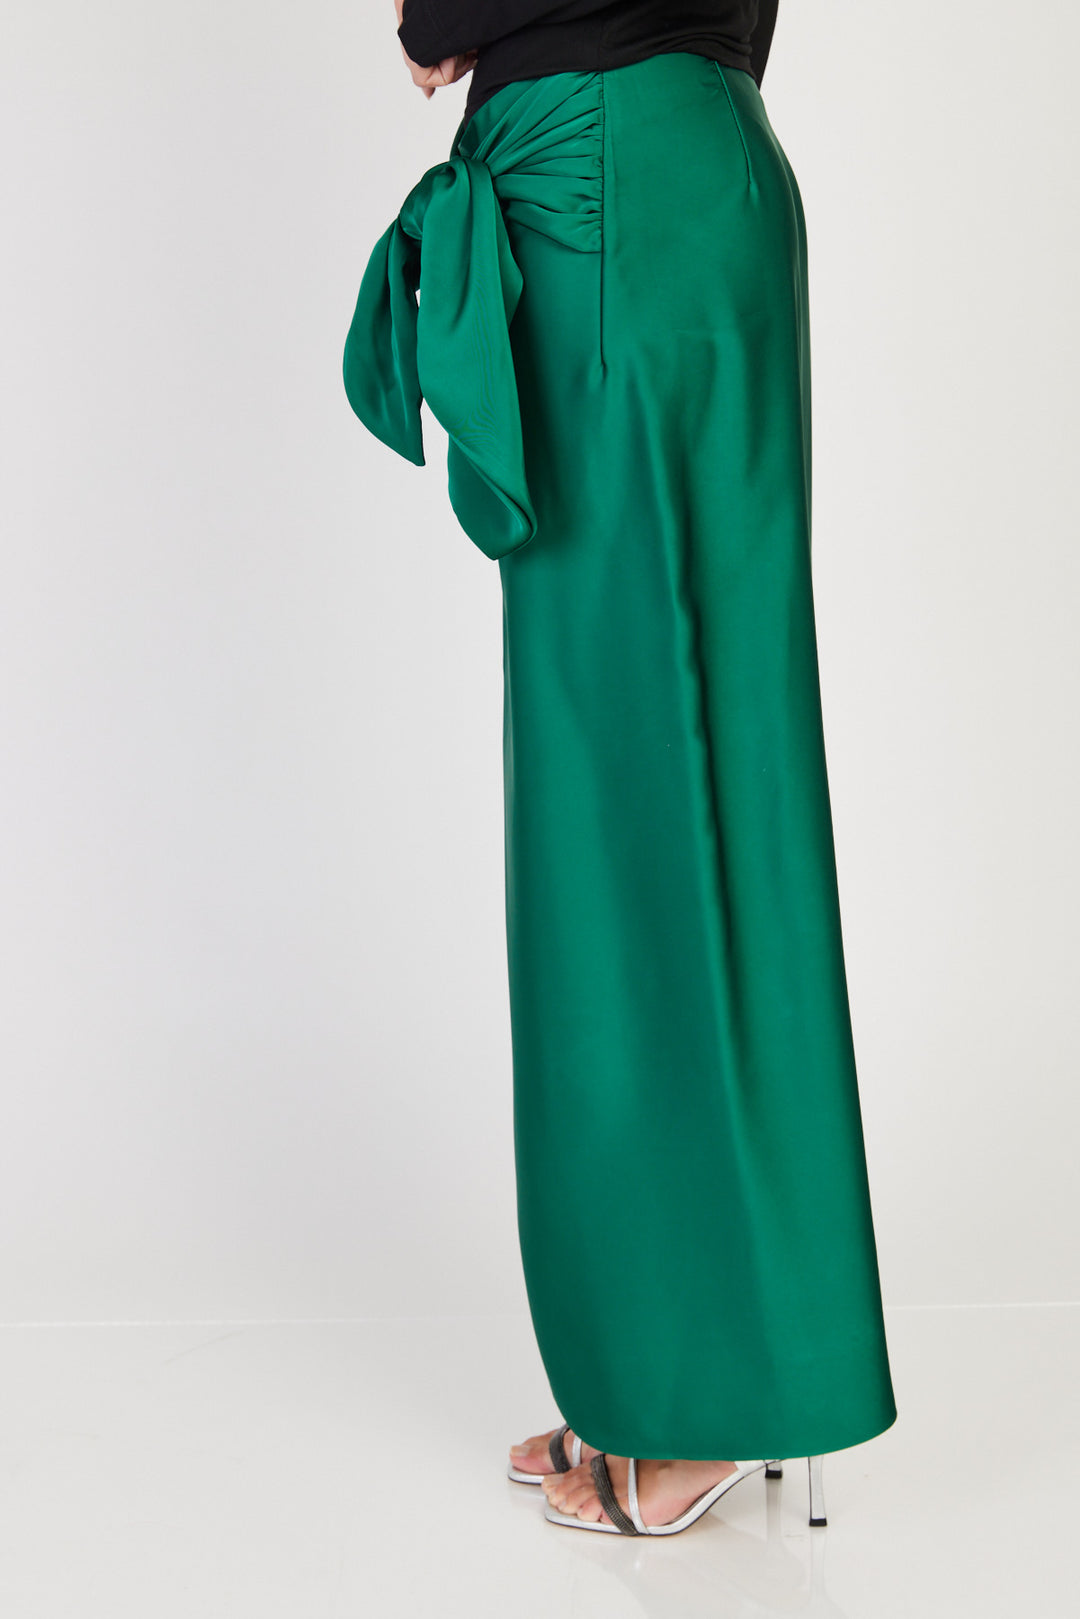 חצאית Shlomo בצבע ירוק בקבוק